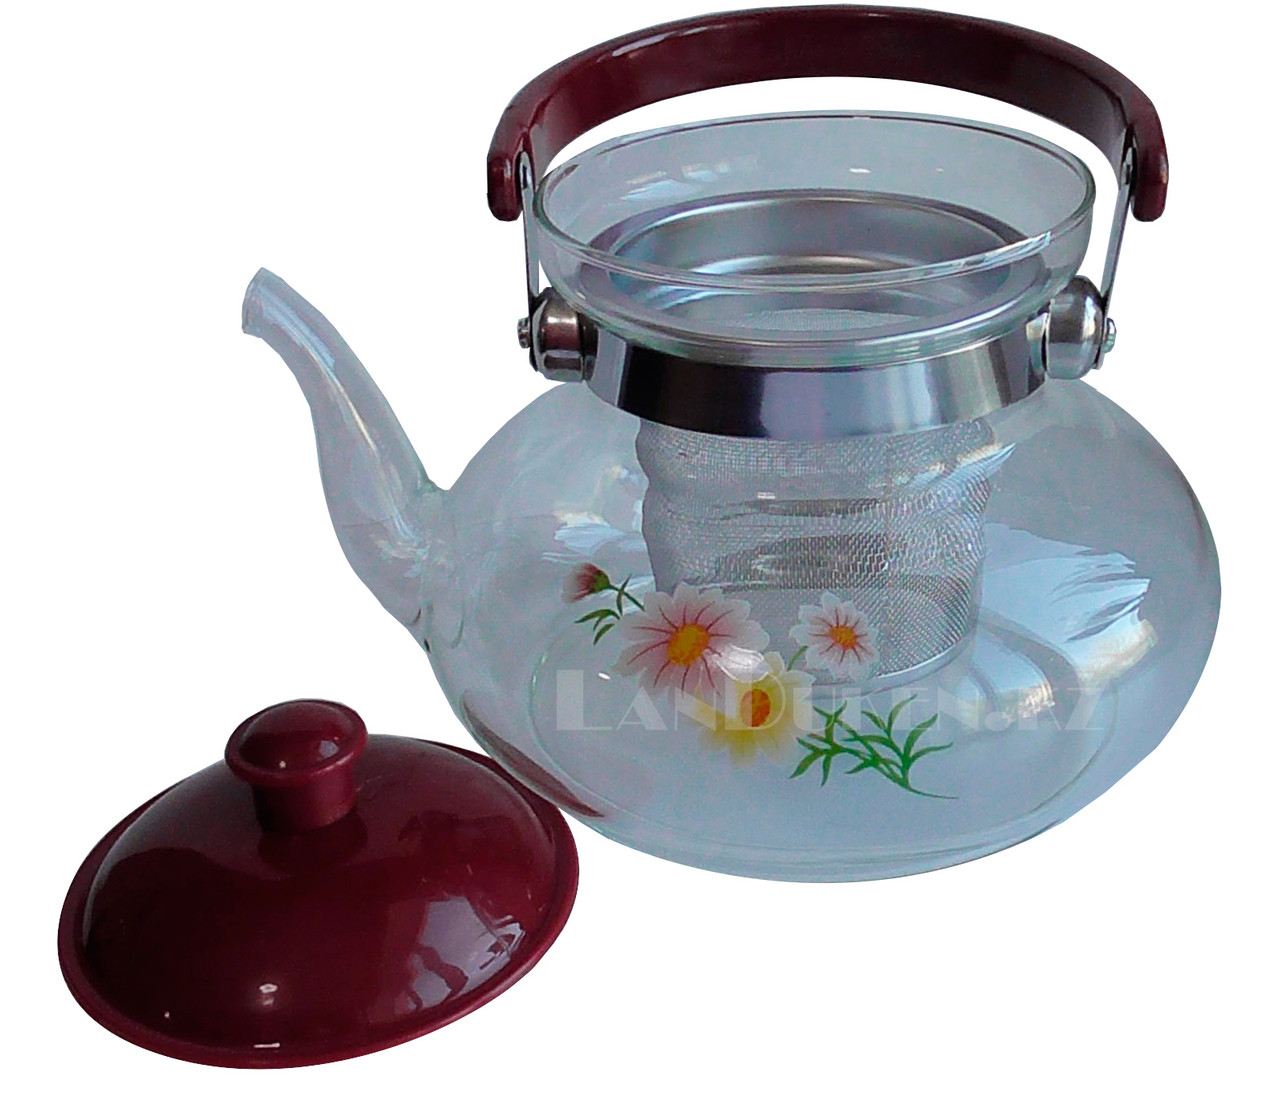 Заварочный стеклянный чайник для чая и кофе 1200 ml (Cofee and tea), заварной чайник, чайник для плиты